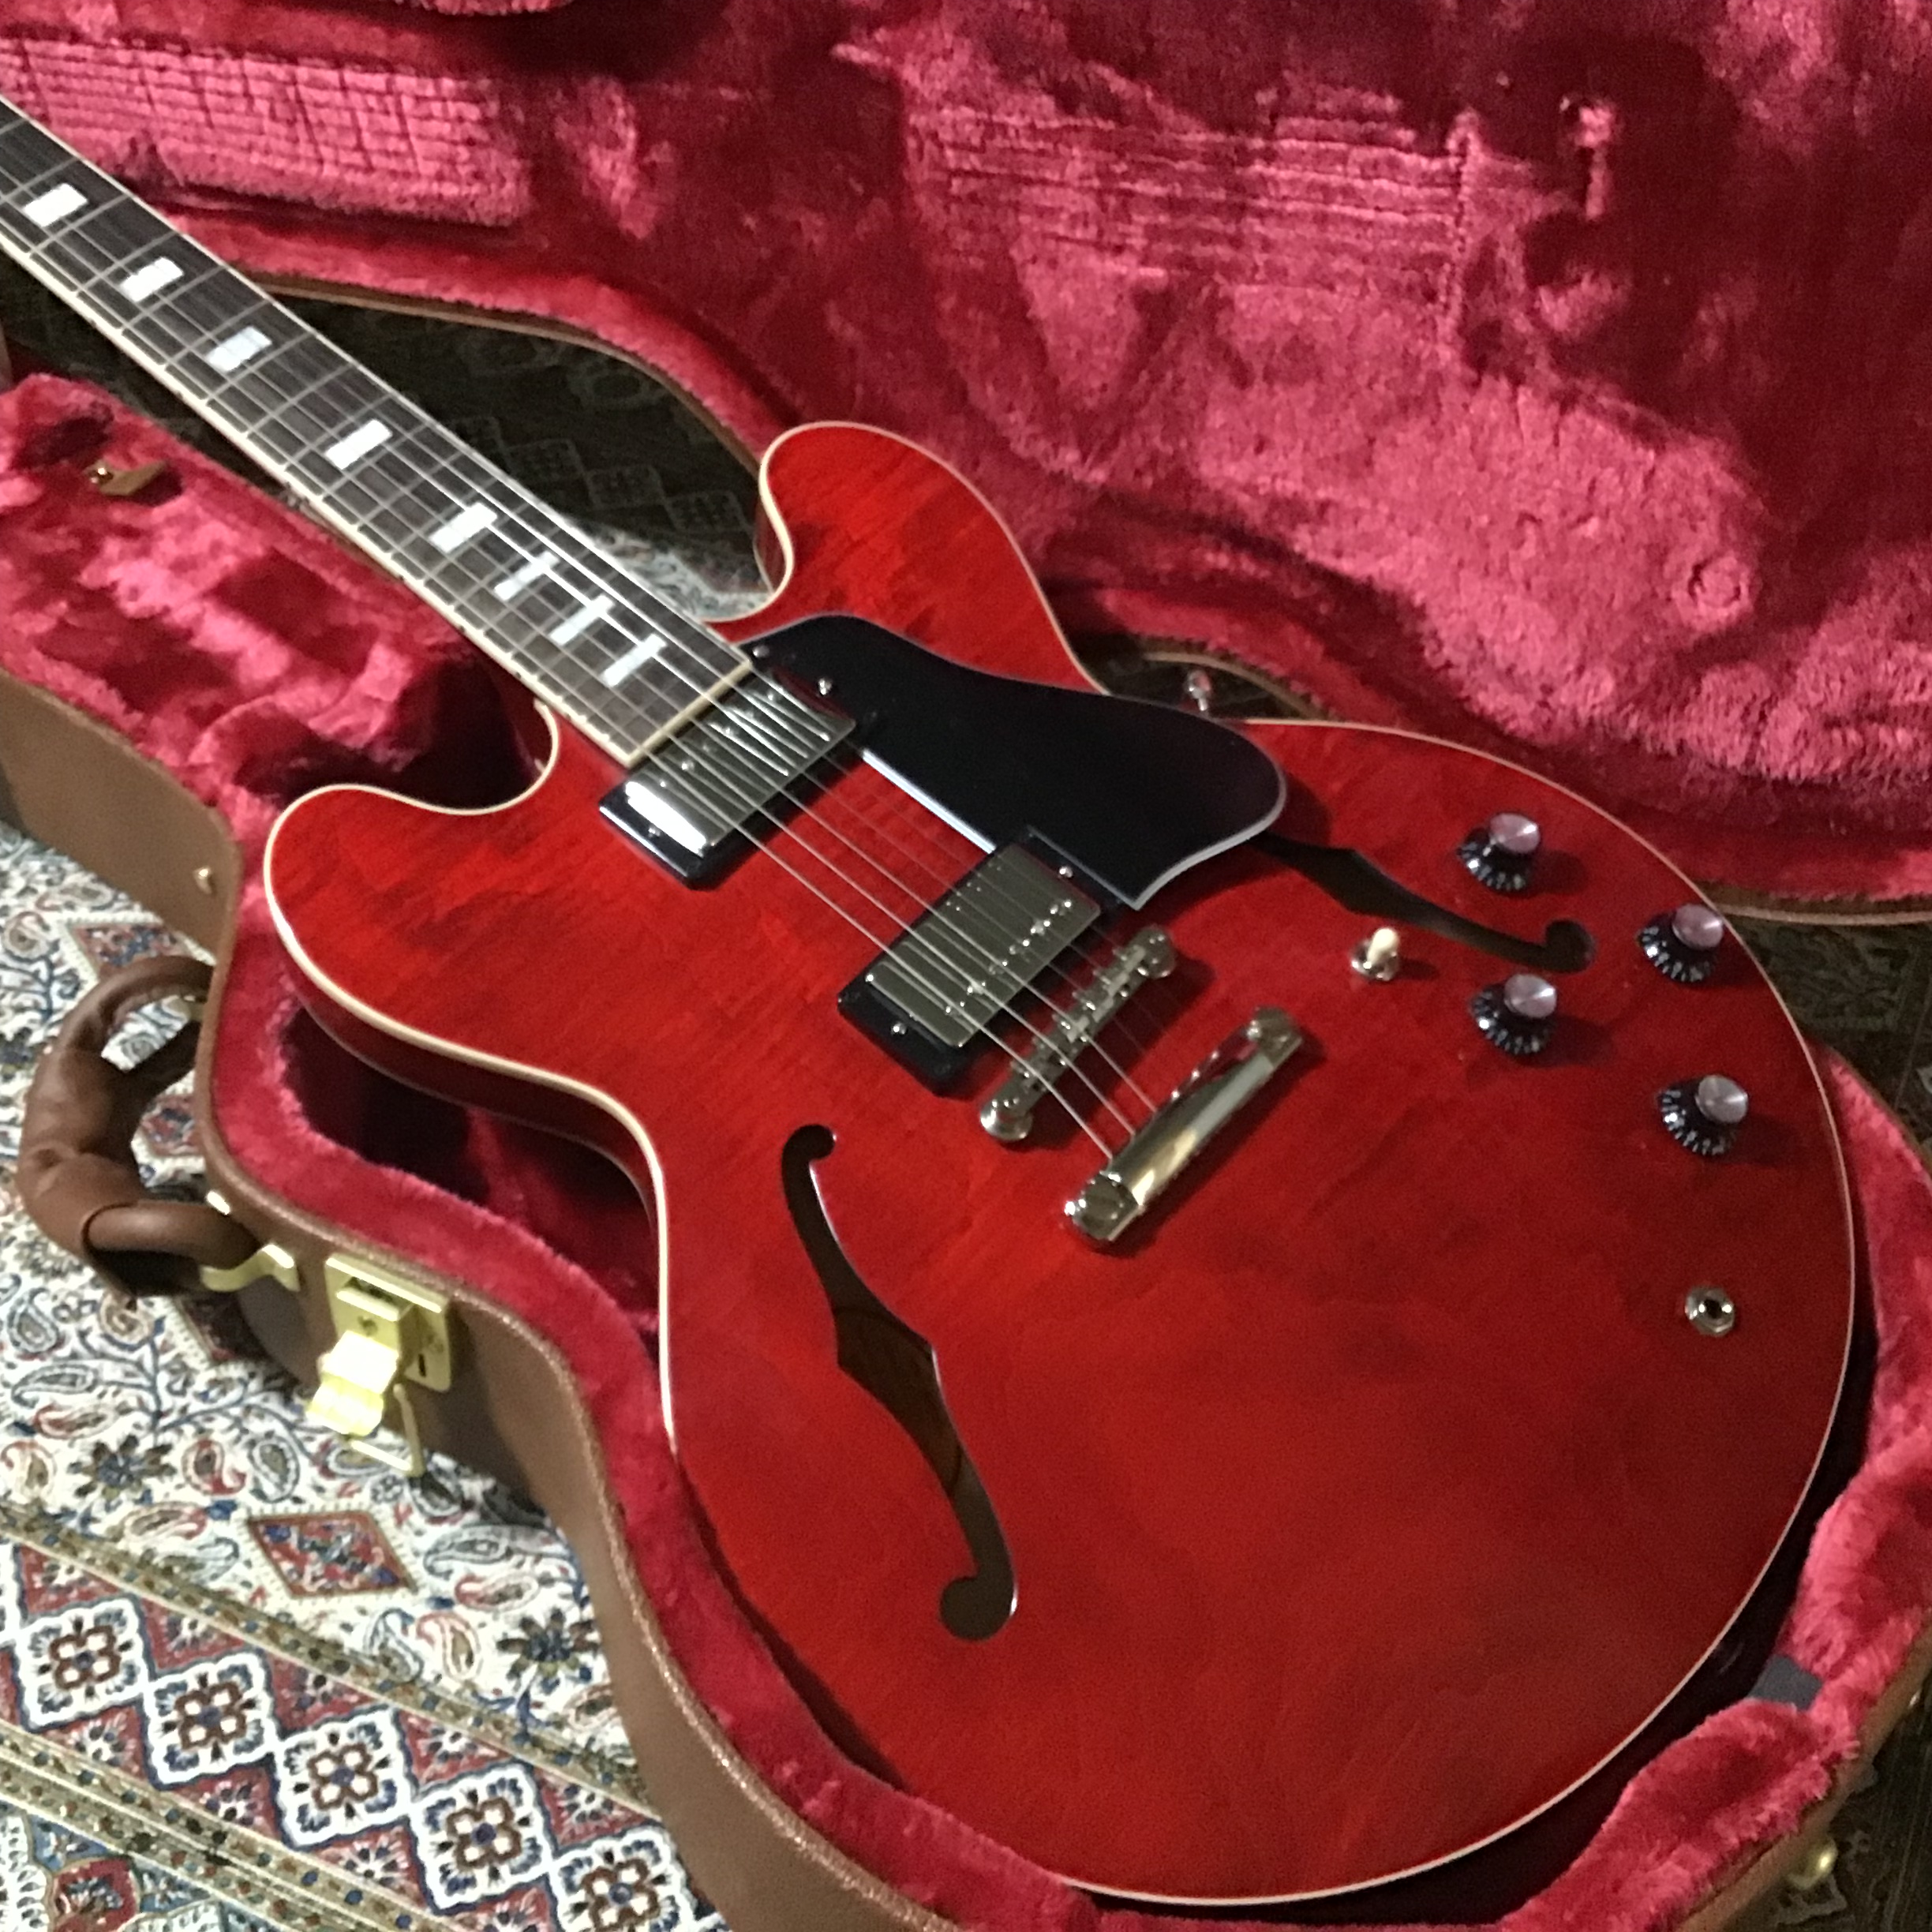 CONTENTSGibson　セミアコースティックギター　ES-335　入荷！ES-335とは、、、Gibson　セミアコースティックギター　ES-335　入荷！ ES-335とは、、、 1958年に生まれたGibsonのエレキギターです。「セミアコースティック」とは、ES-175のような箱ものギタ […]